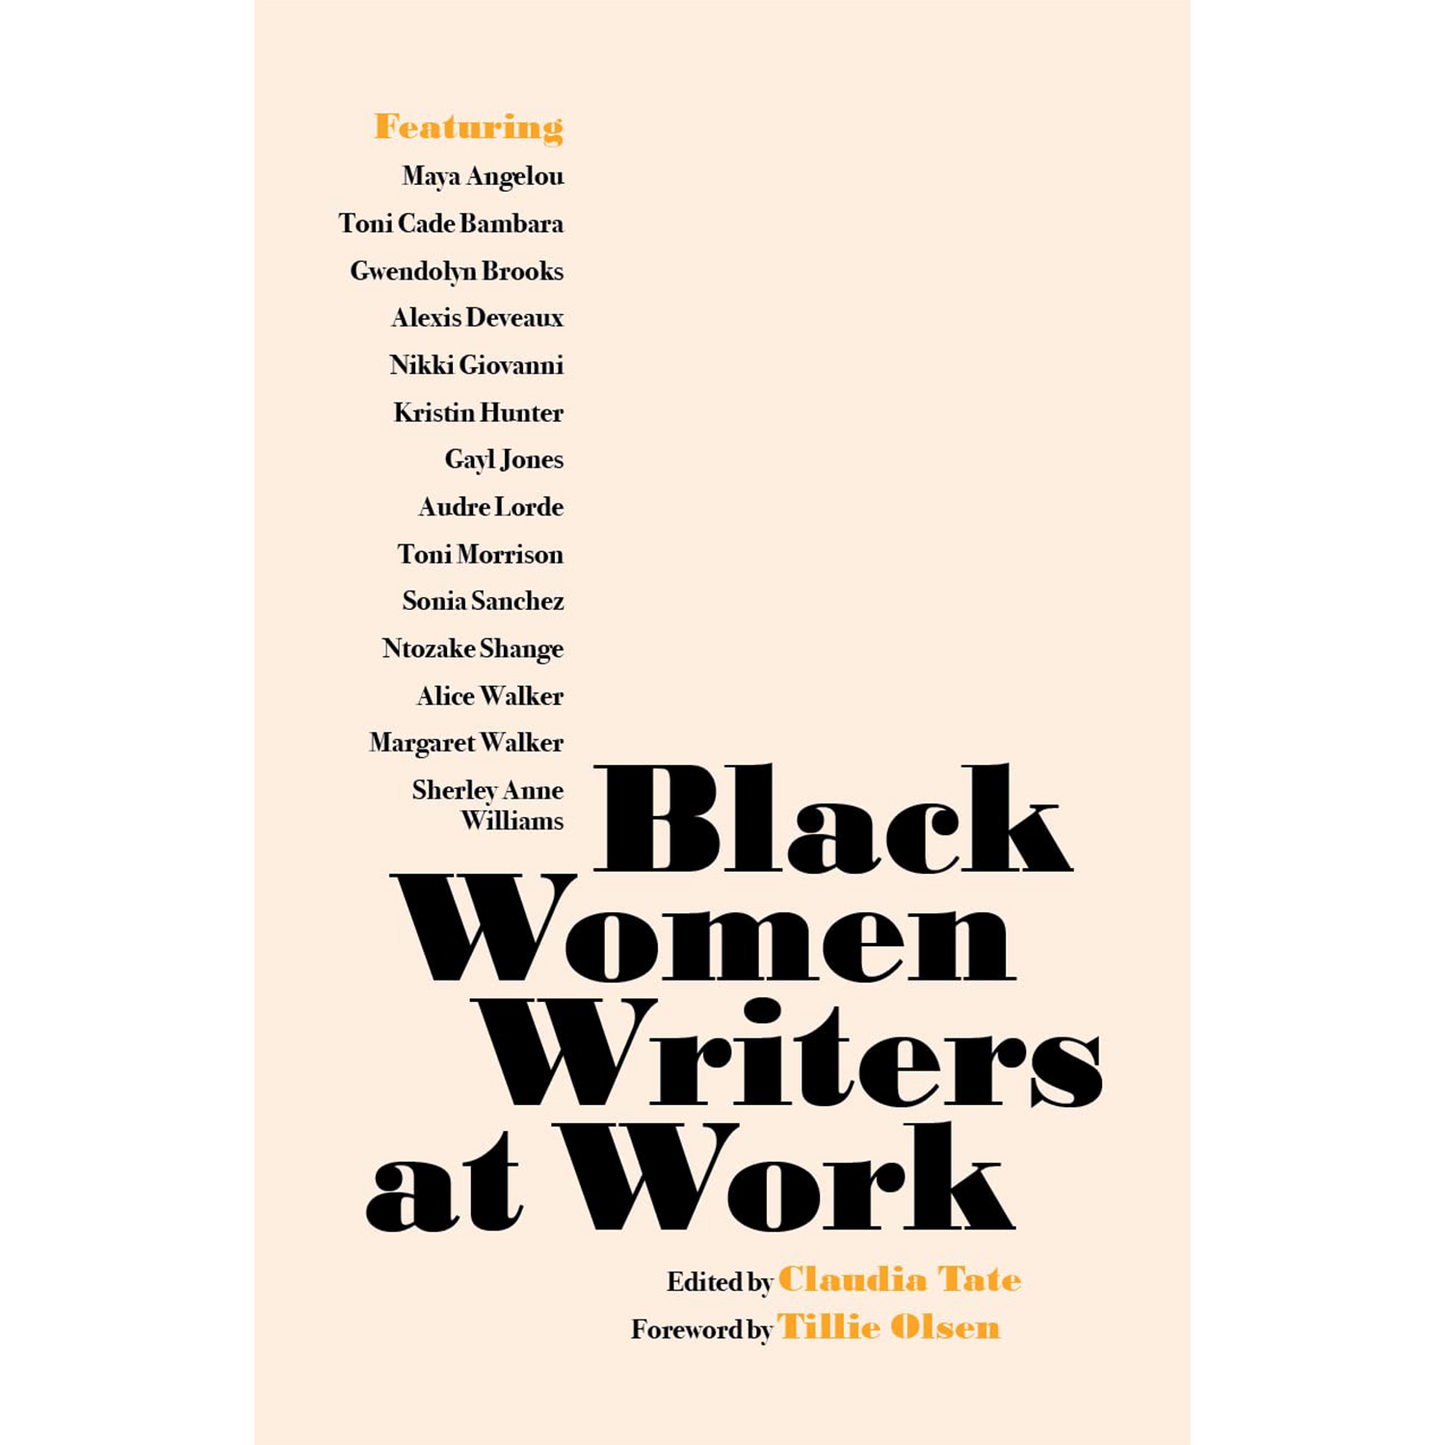 Black Women Writers at Work (Paperback)